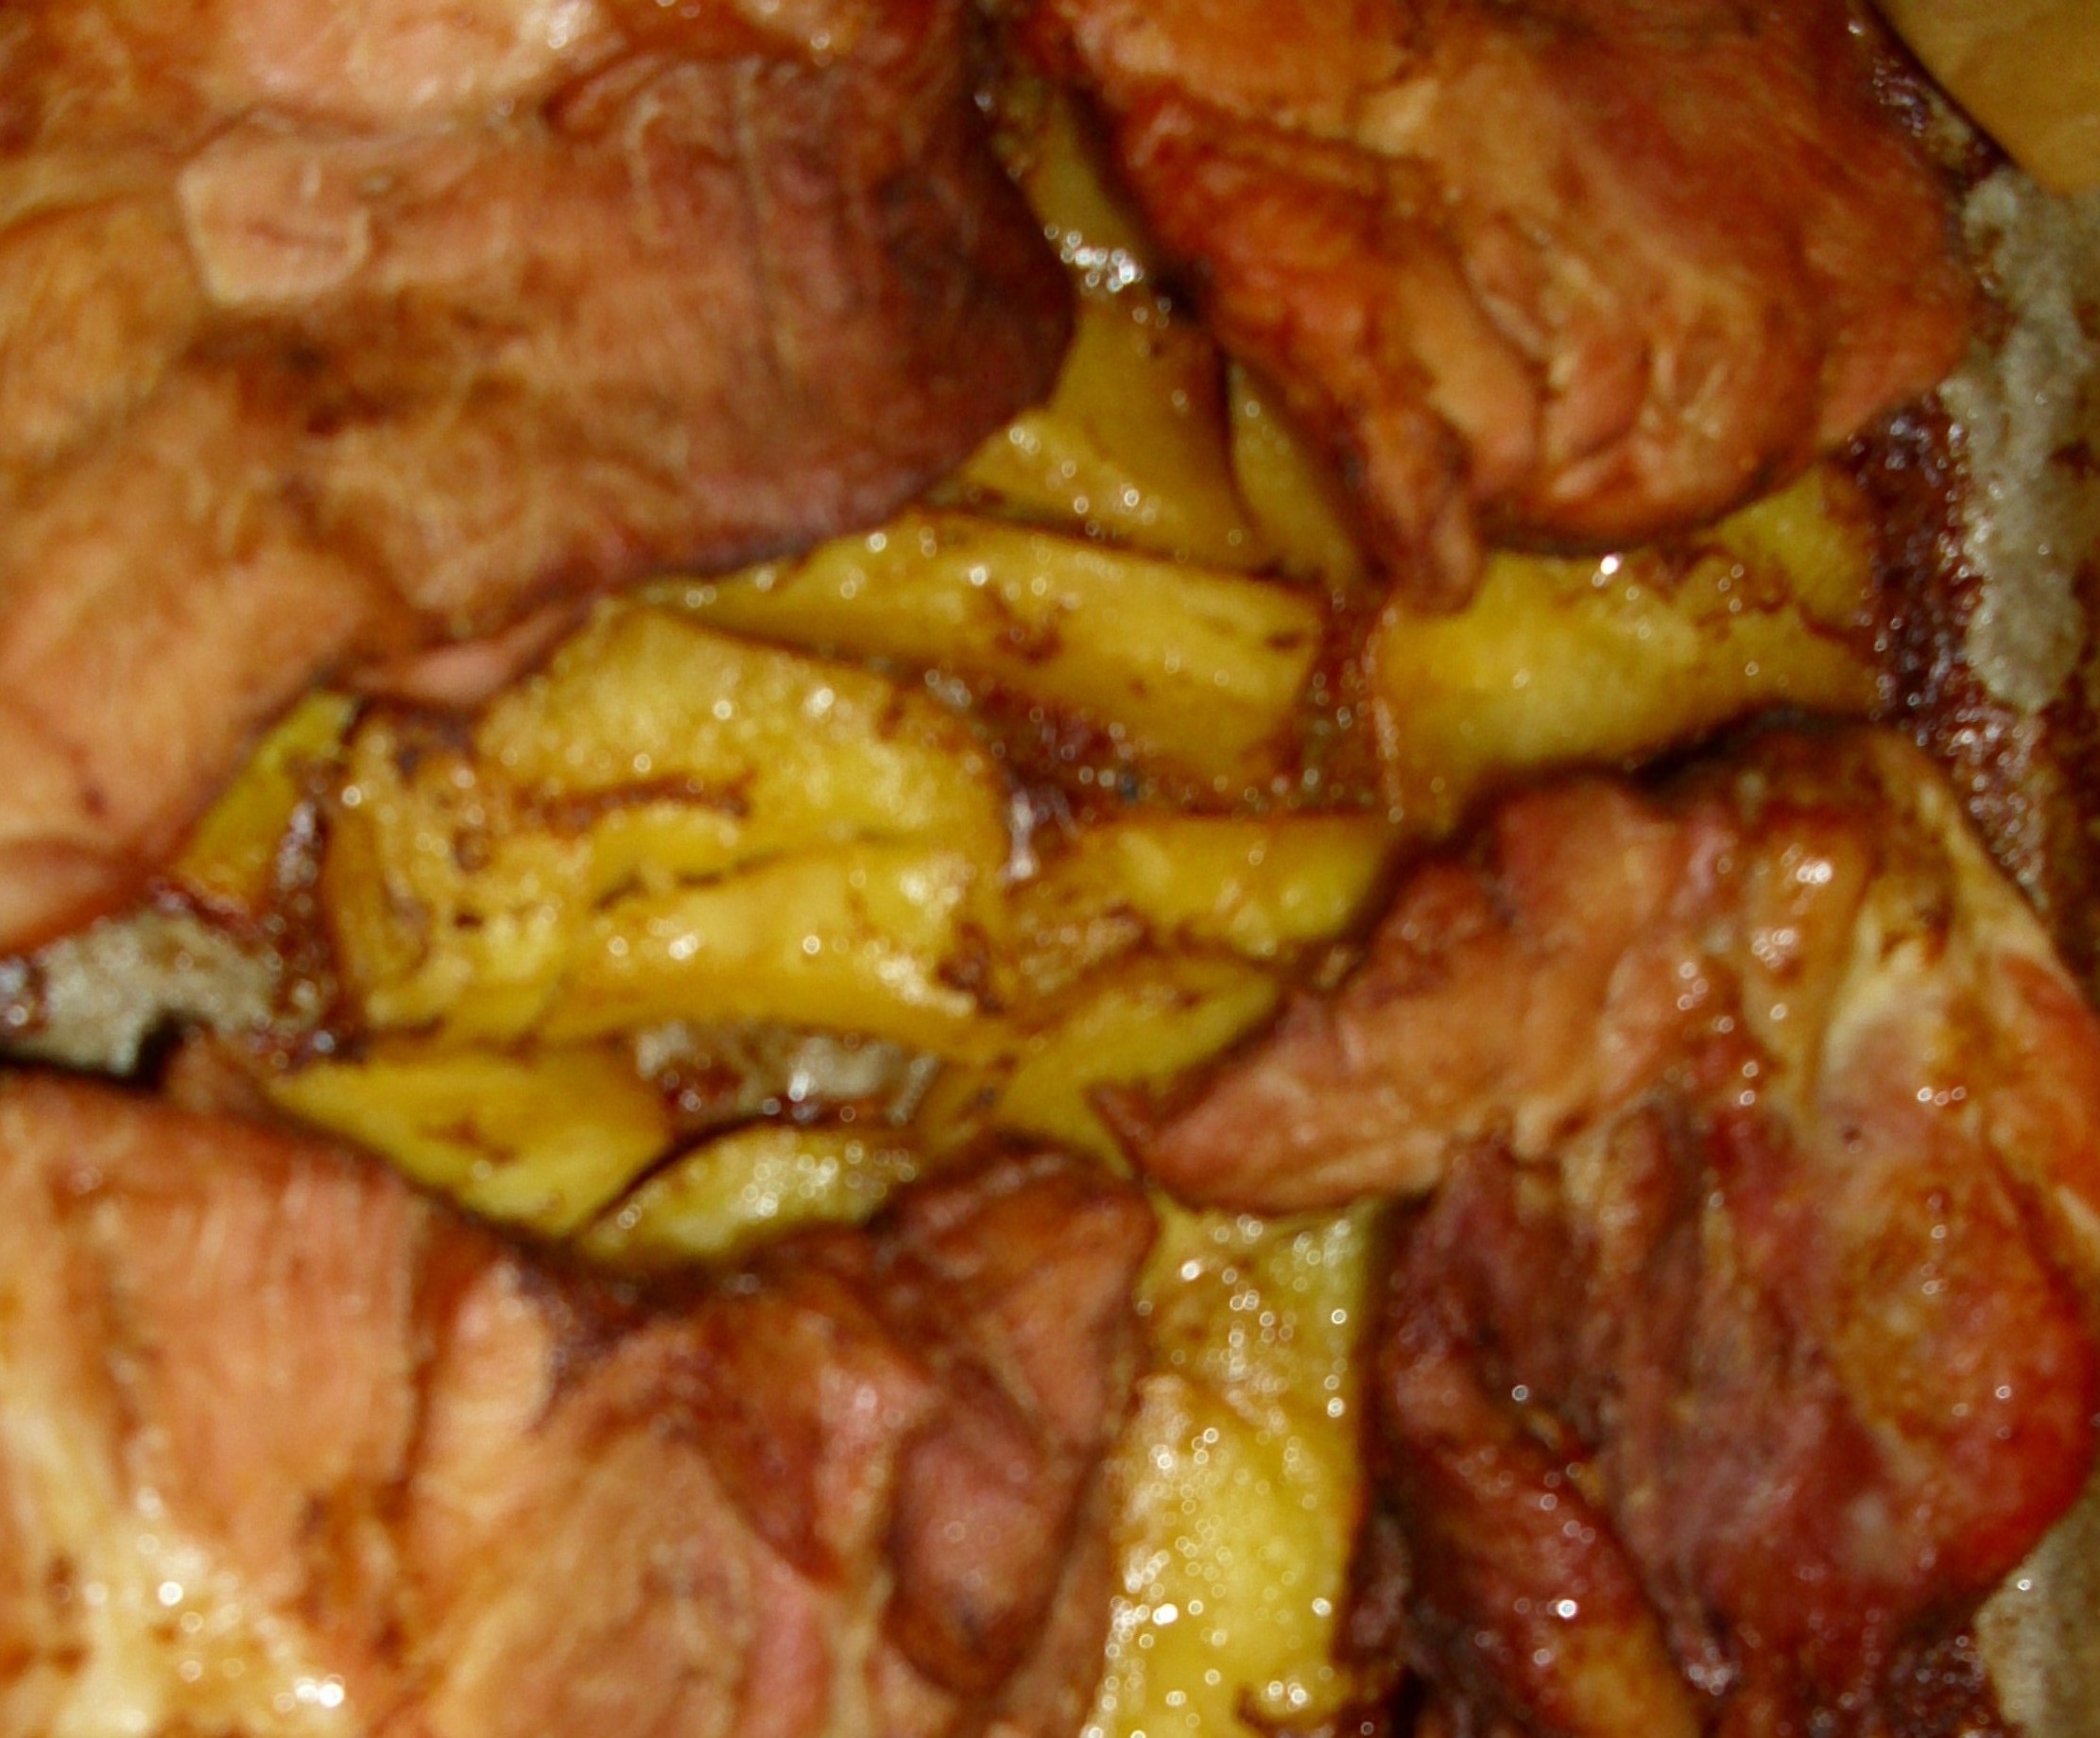 Carne de porc cu cartofi la cuptor